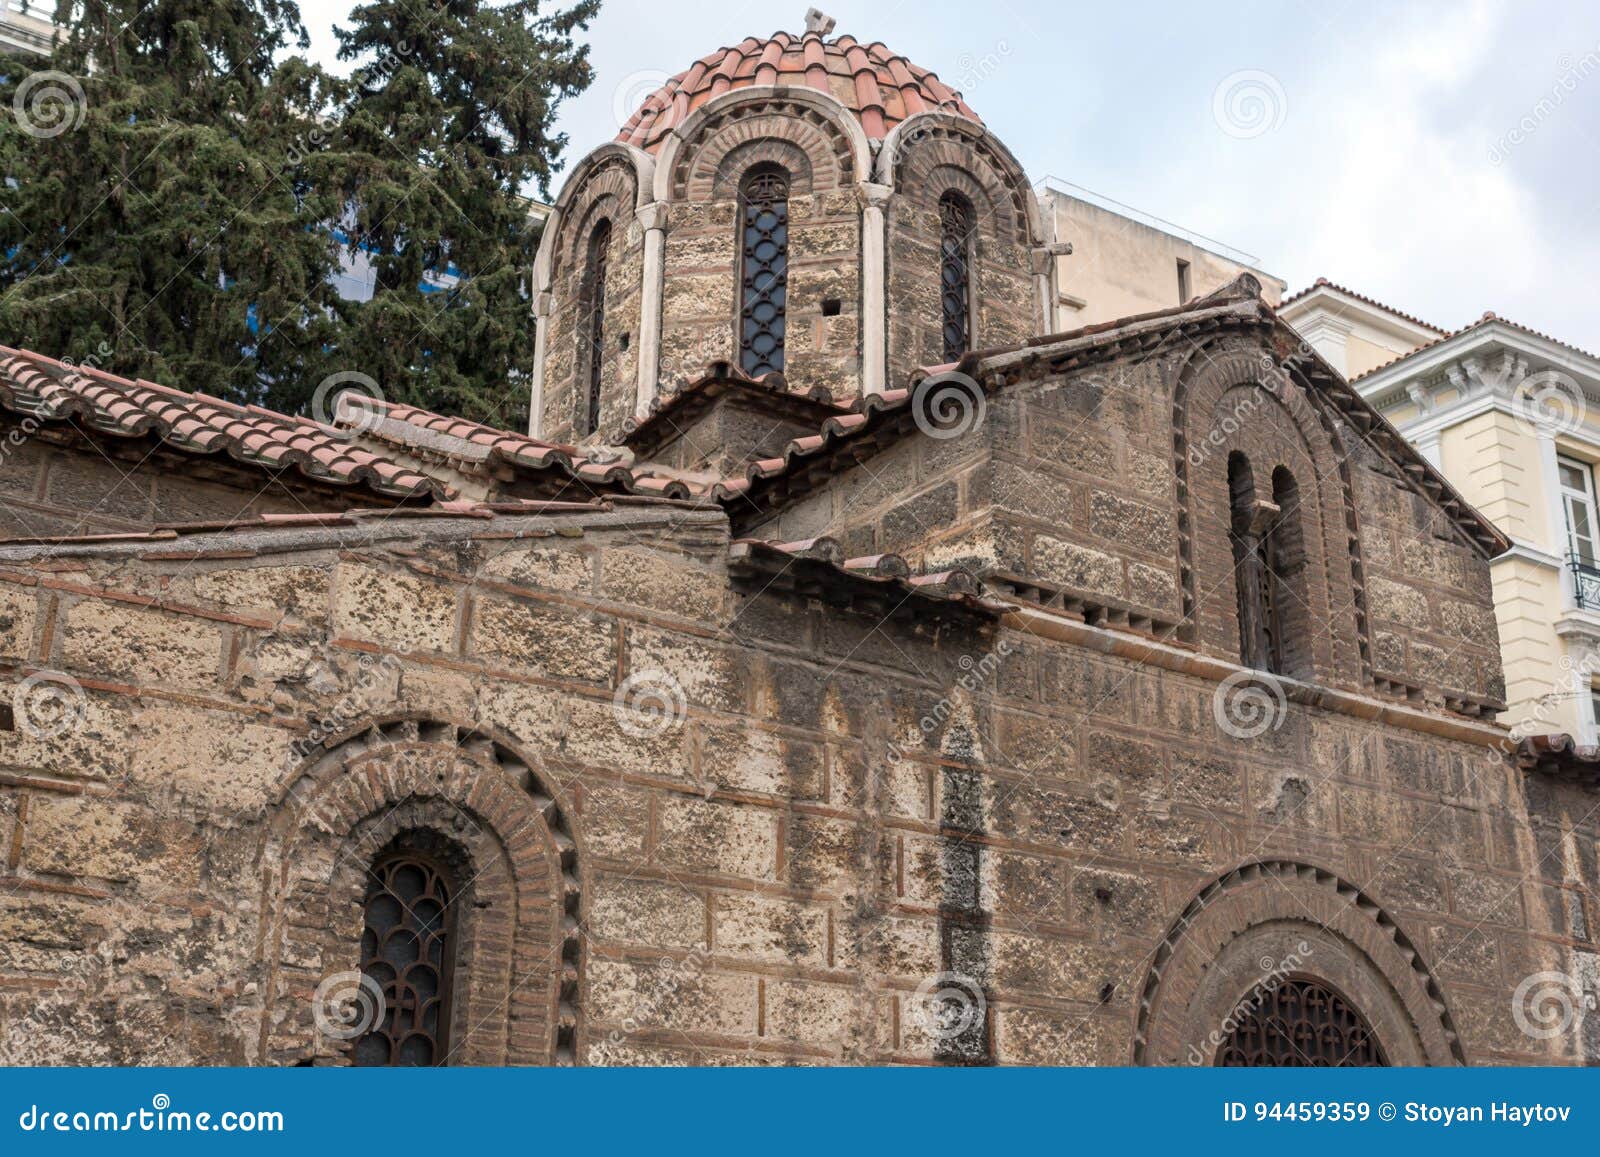 ATHÈNES, GRÈCE - 20 JANVIER 2017 : Église de Panaghia Kapnikarea à Athènes, Attique, Grèce